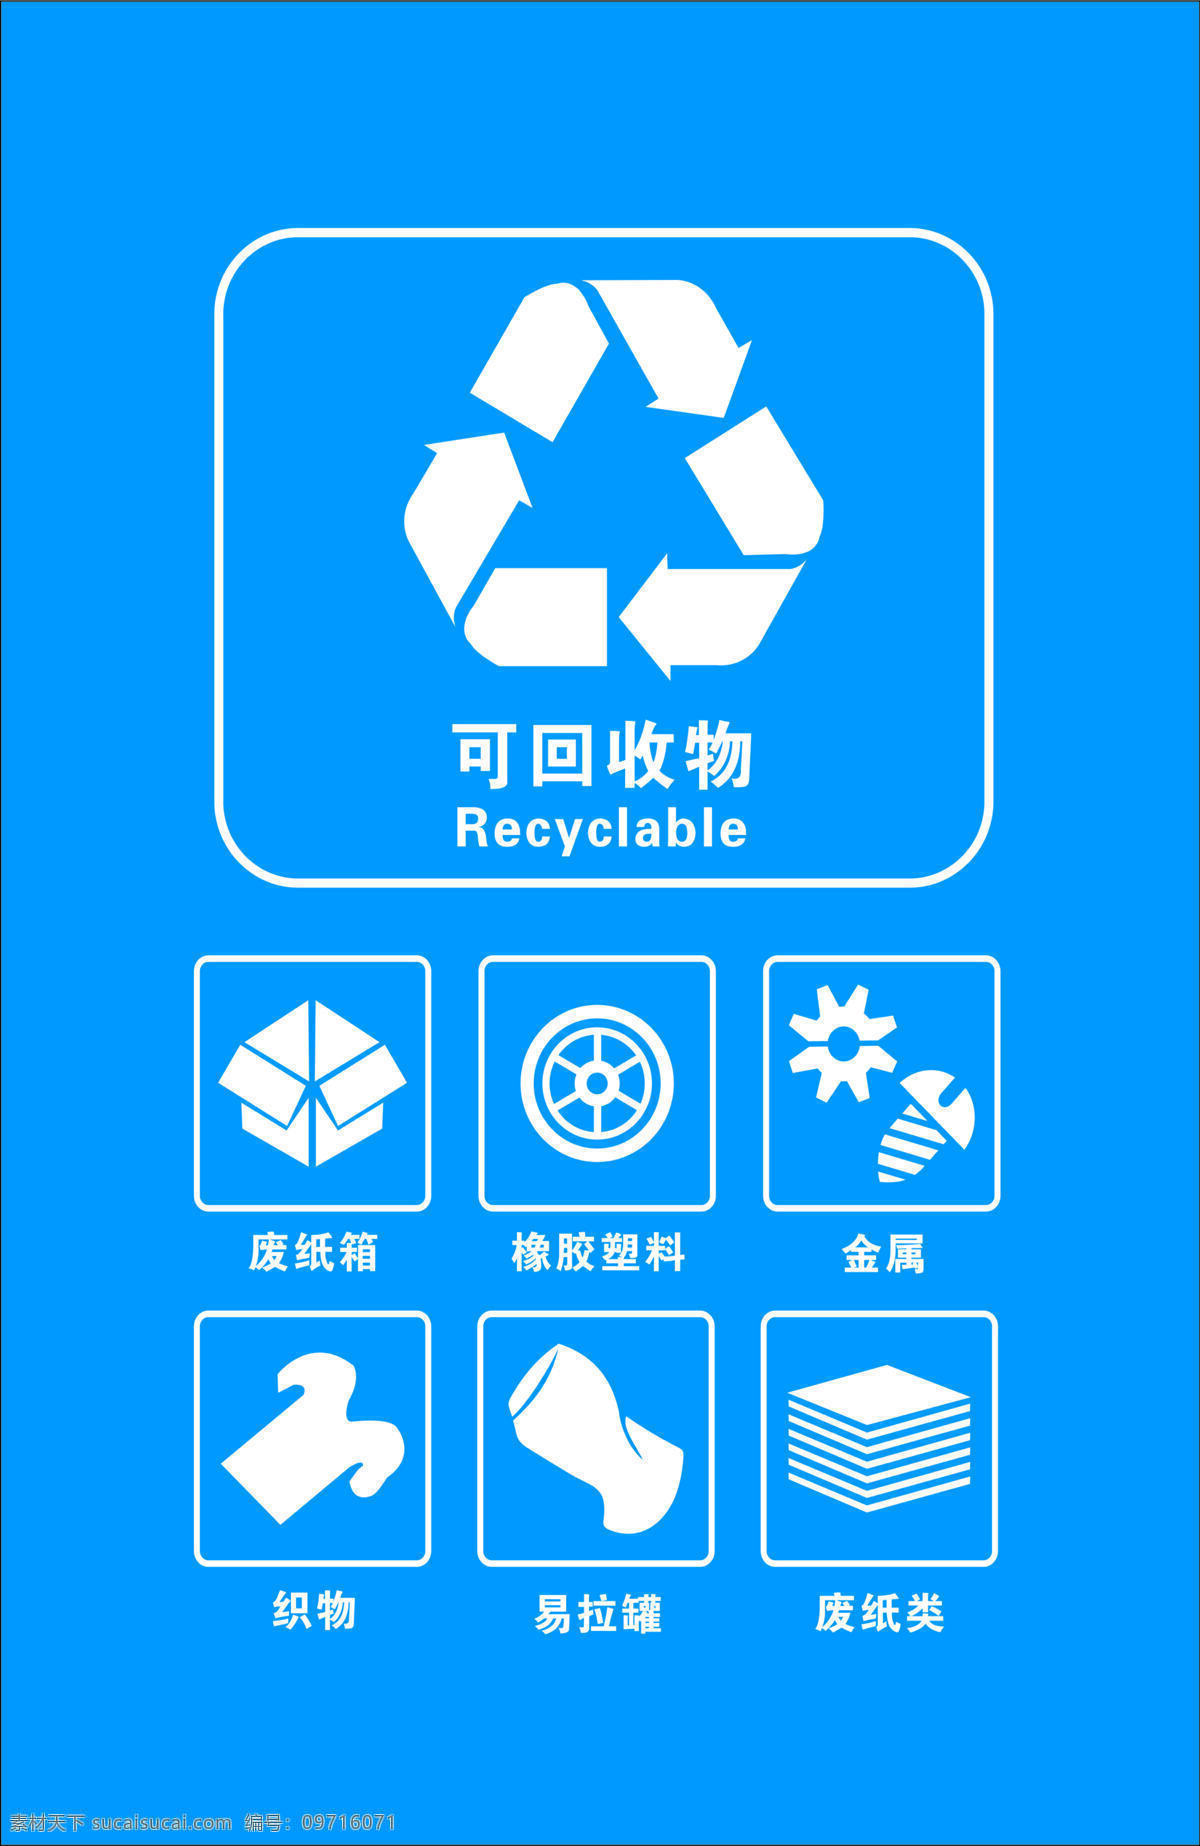 可回收物 垃圾分类 垃圾分类图 有害垃圾 厨余垃圾 其他垃圾